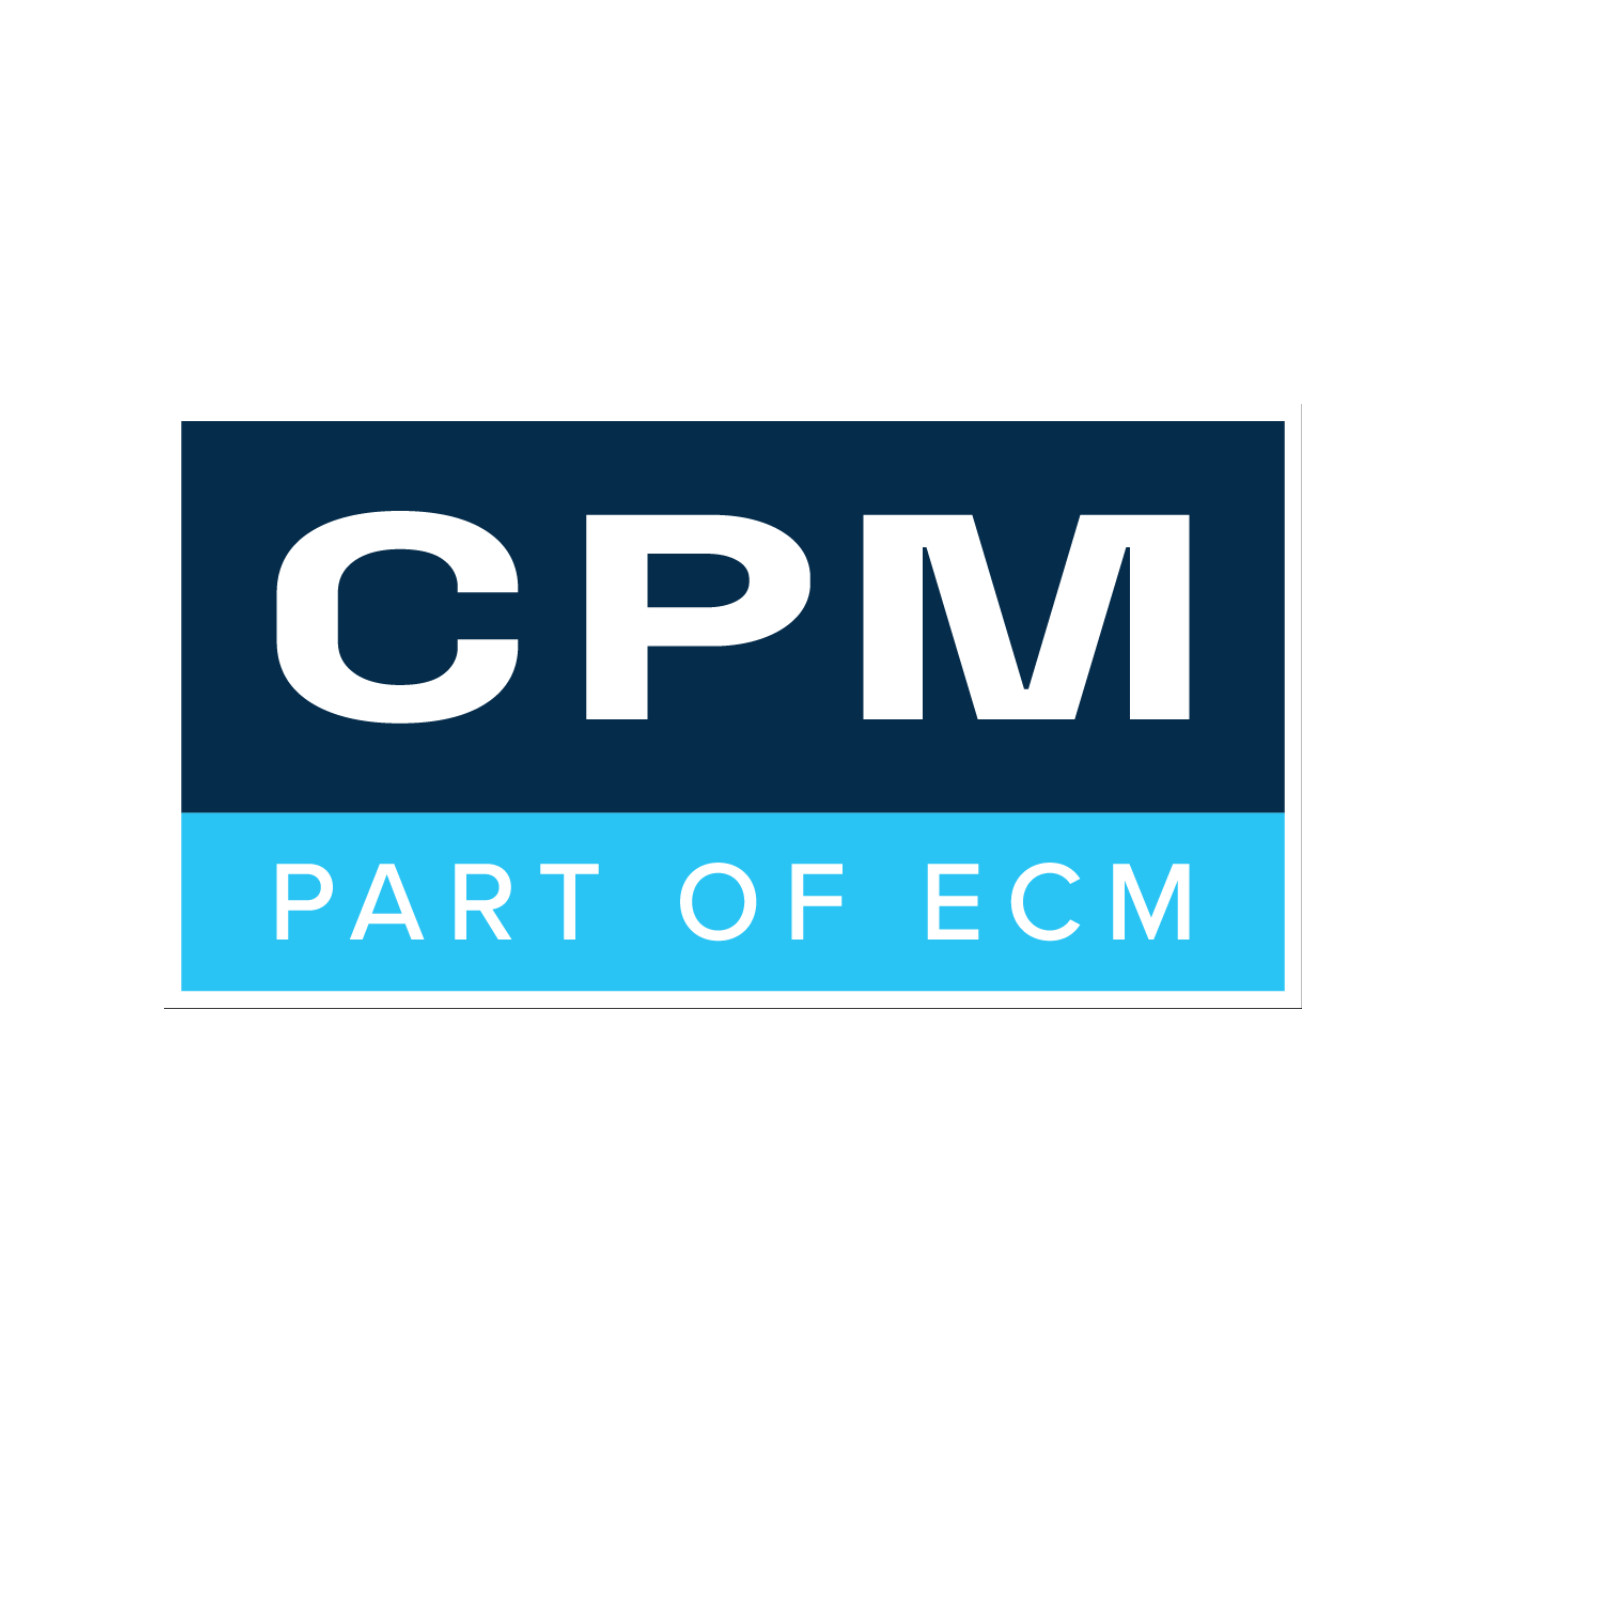 MTF Technik - ECM Industries (CPM) is new Sales Partner in Denmark